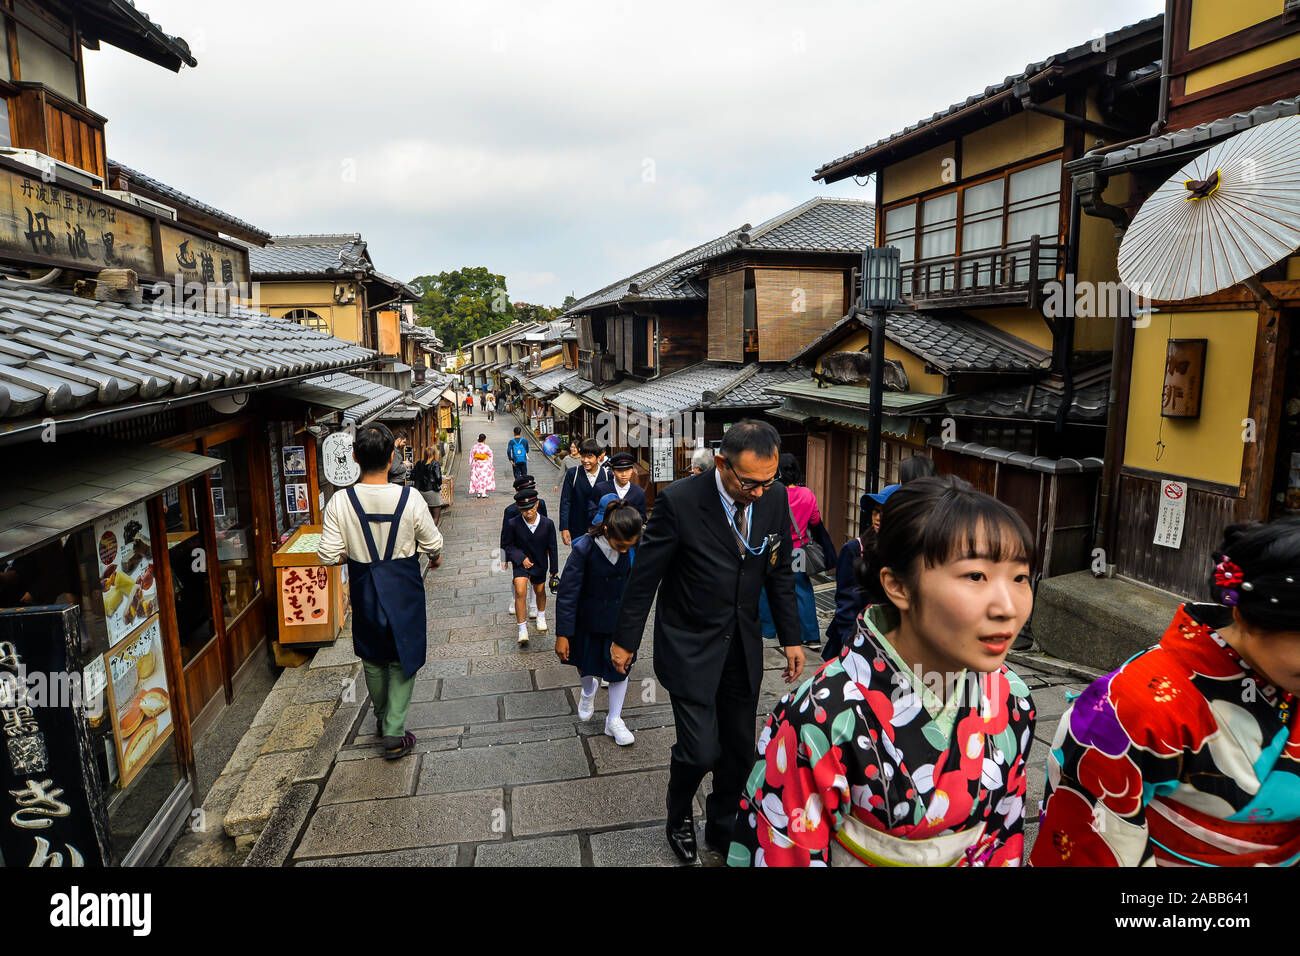 Kyoto, Giappone - 10/30/19 - La gente nelle vecchie strade intorno al Kiyomizu-dera tempio complesso. Foto Stock